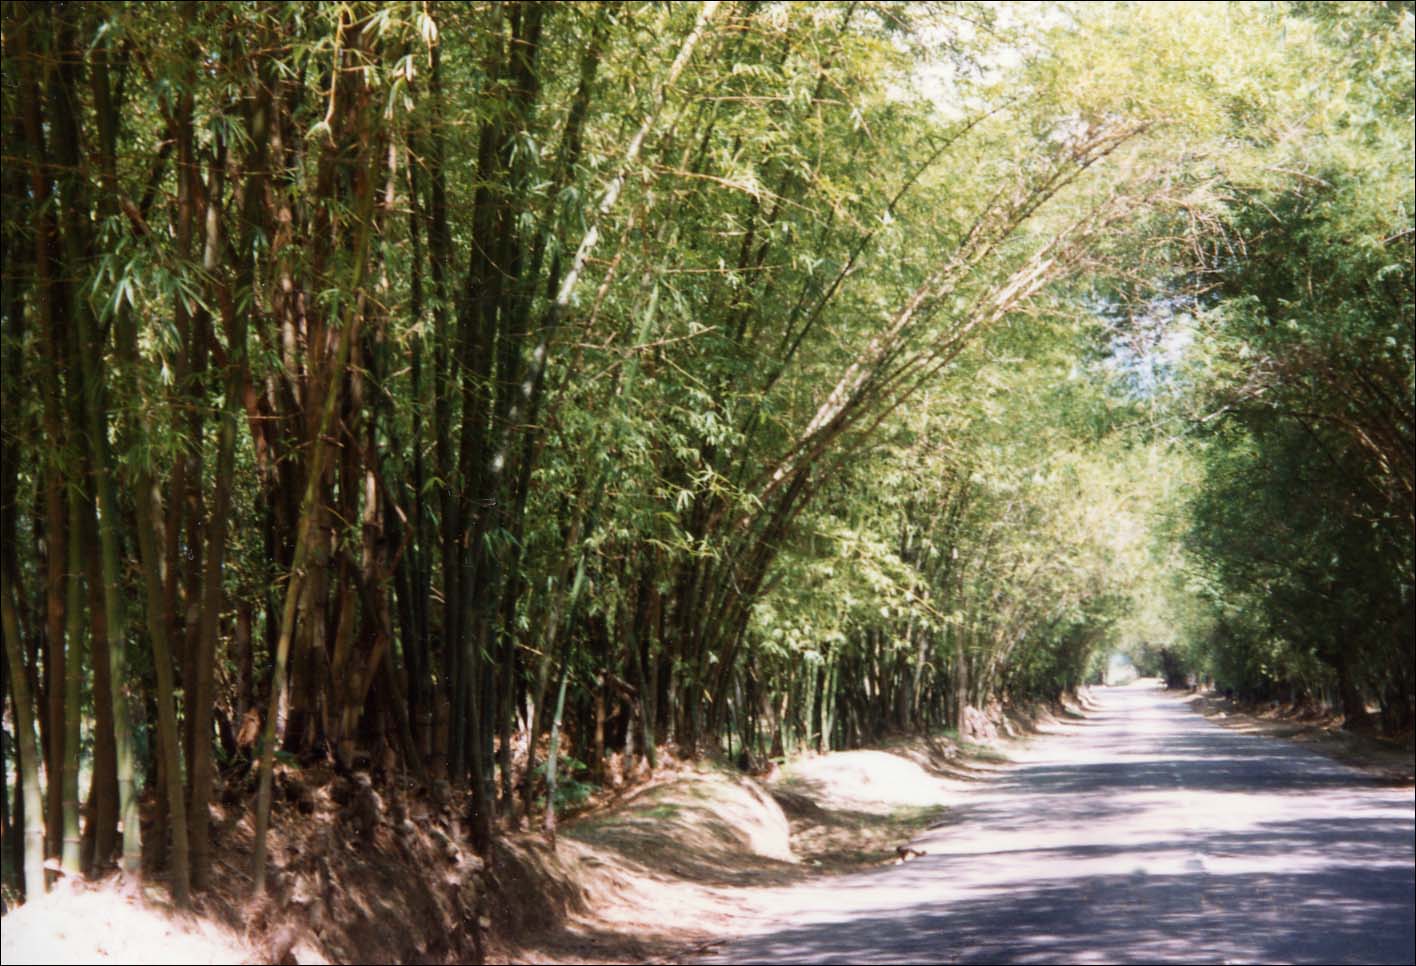 Bamboo Avenue